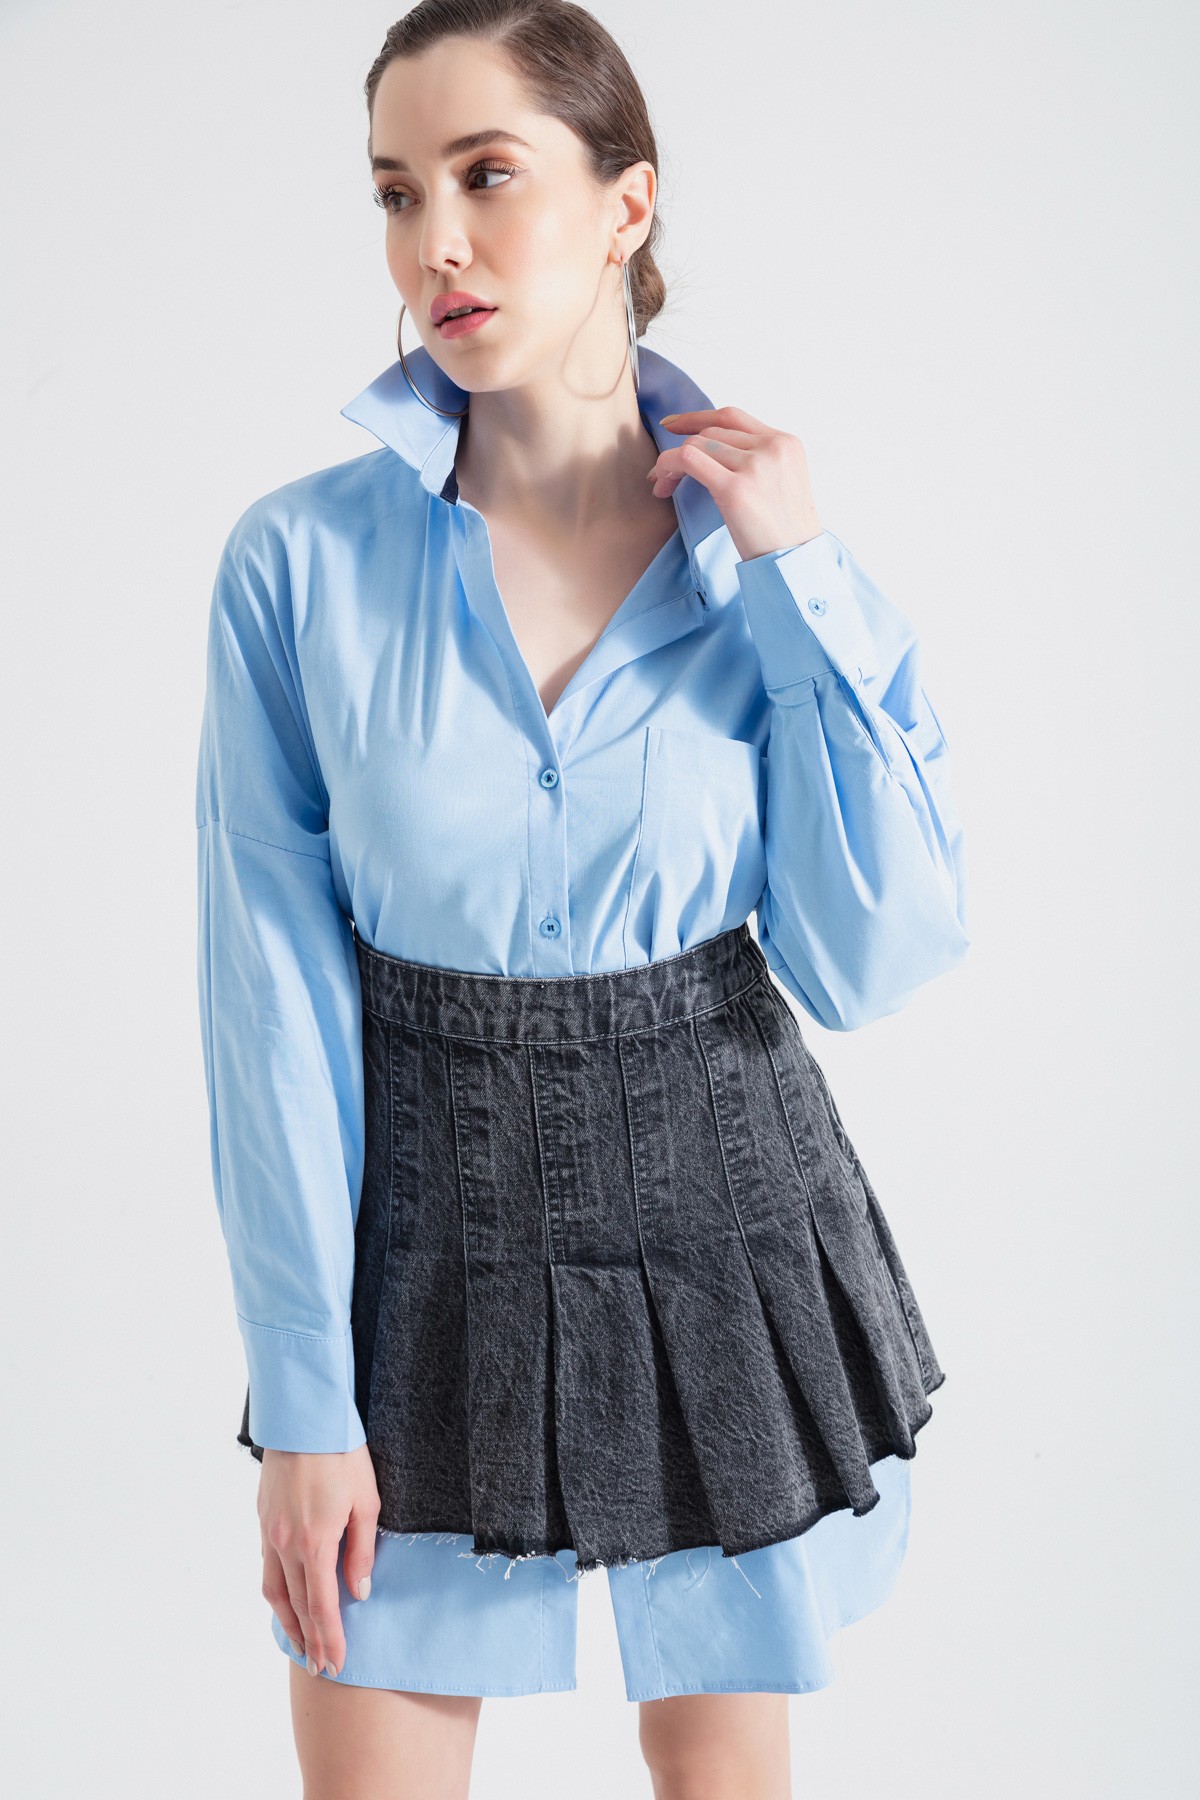 Kadın Oversize Tunik Gömlek - Mavi